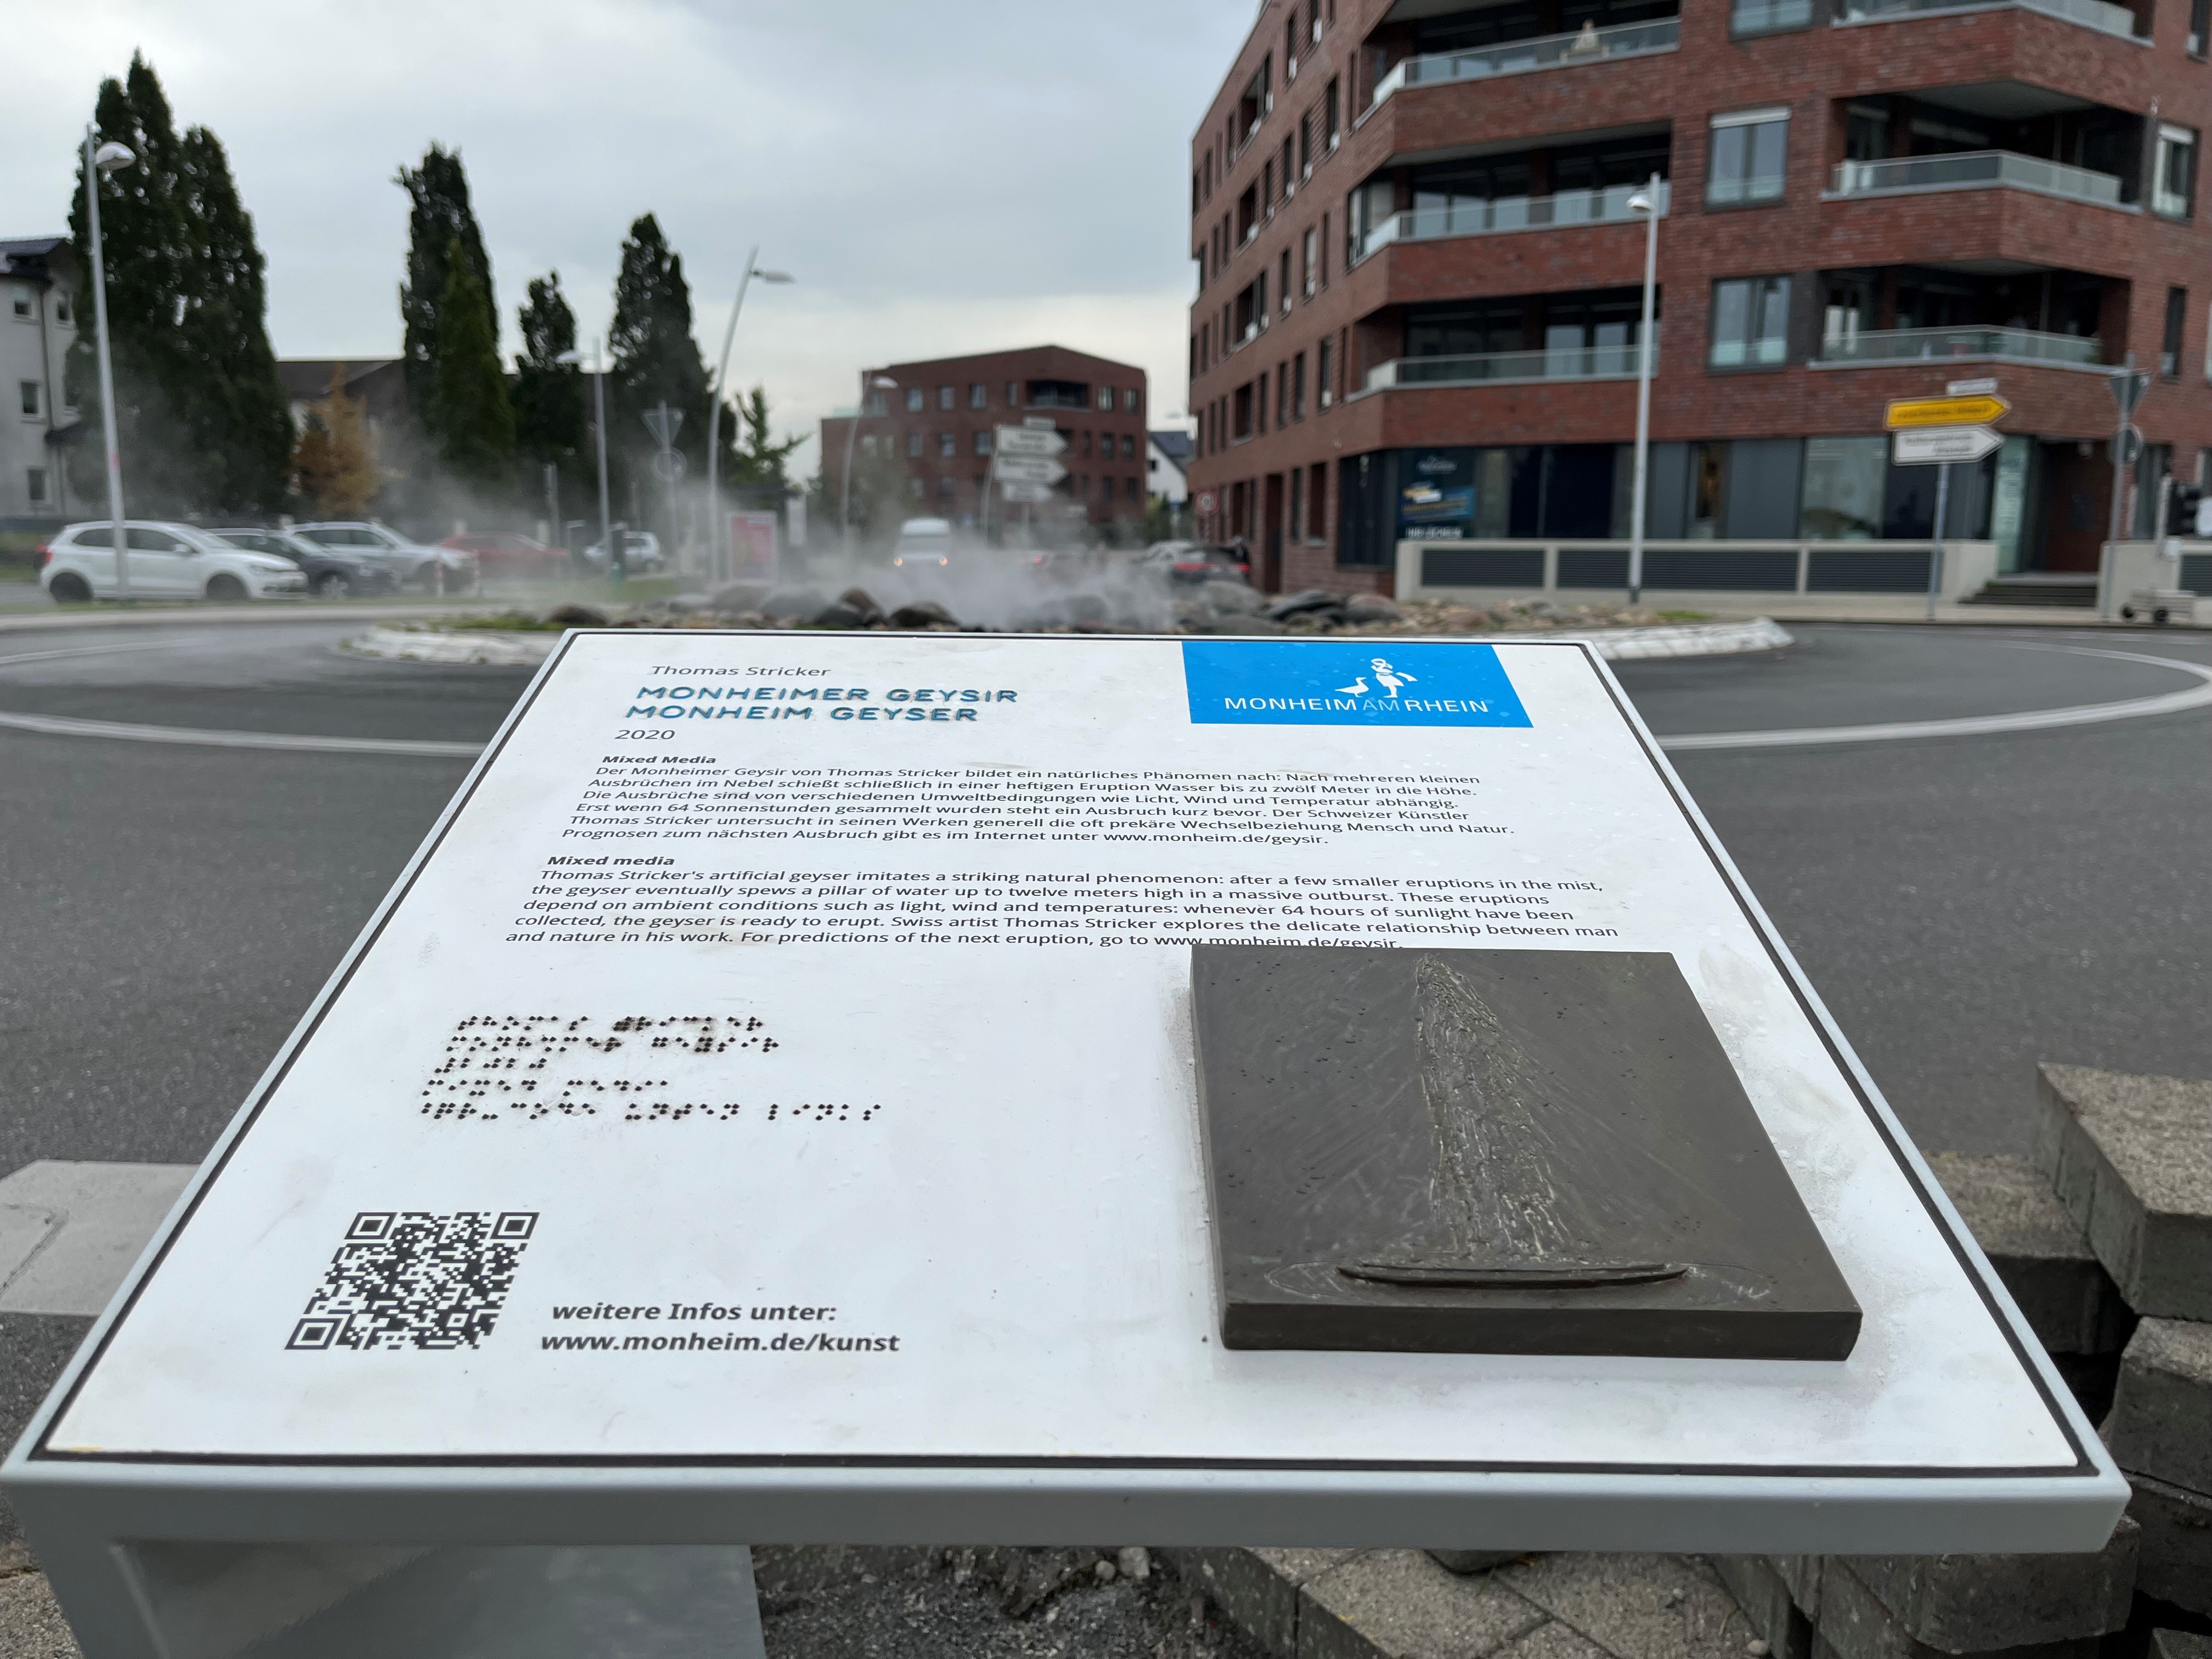 Barrierefrei zugängliche Stelen bieten Informationen über Kunst im öffentlichen Raum.